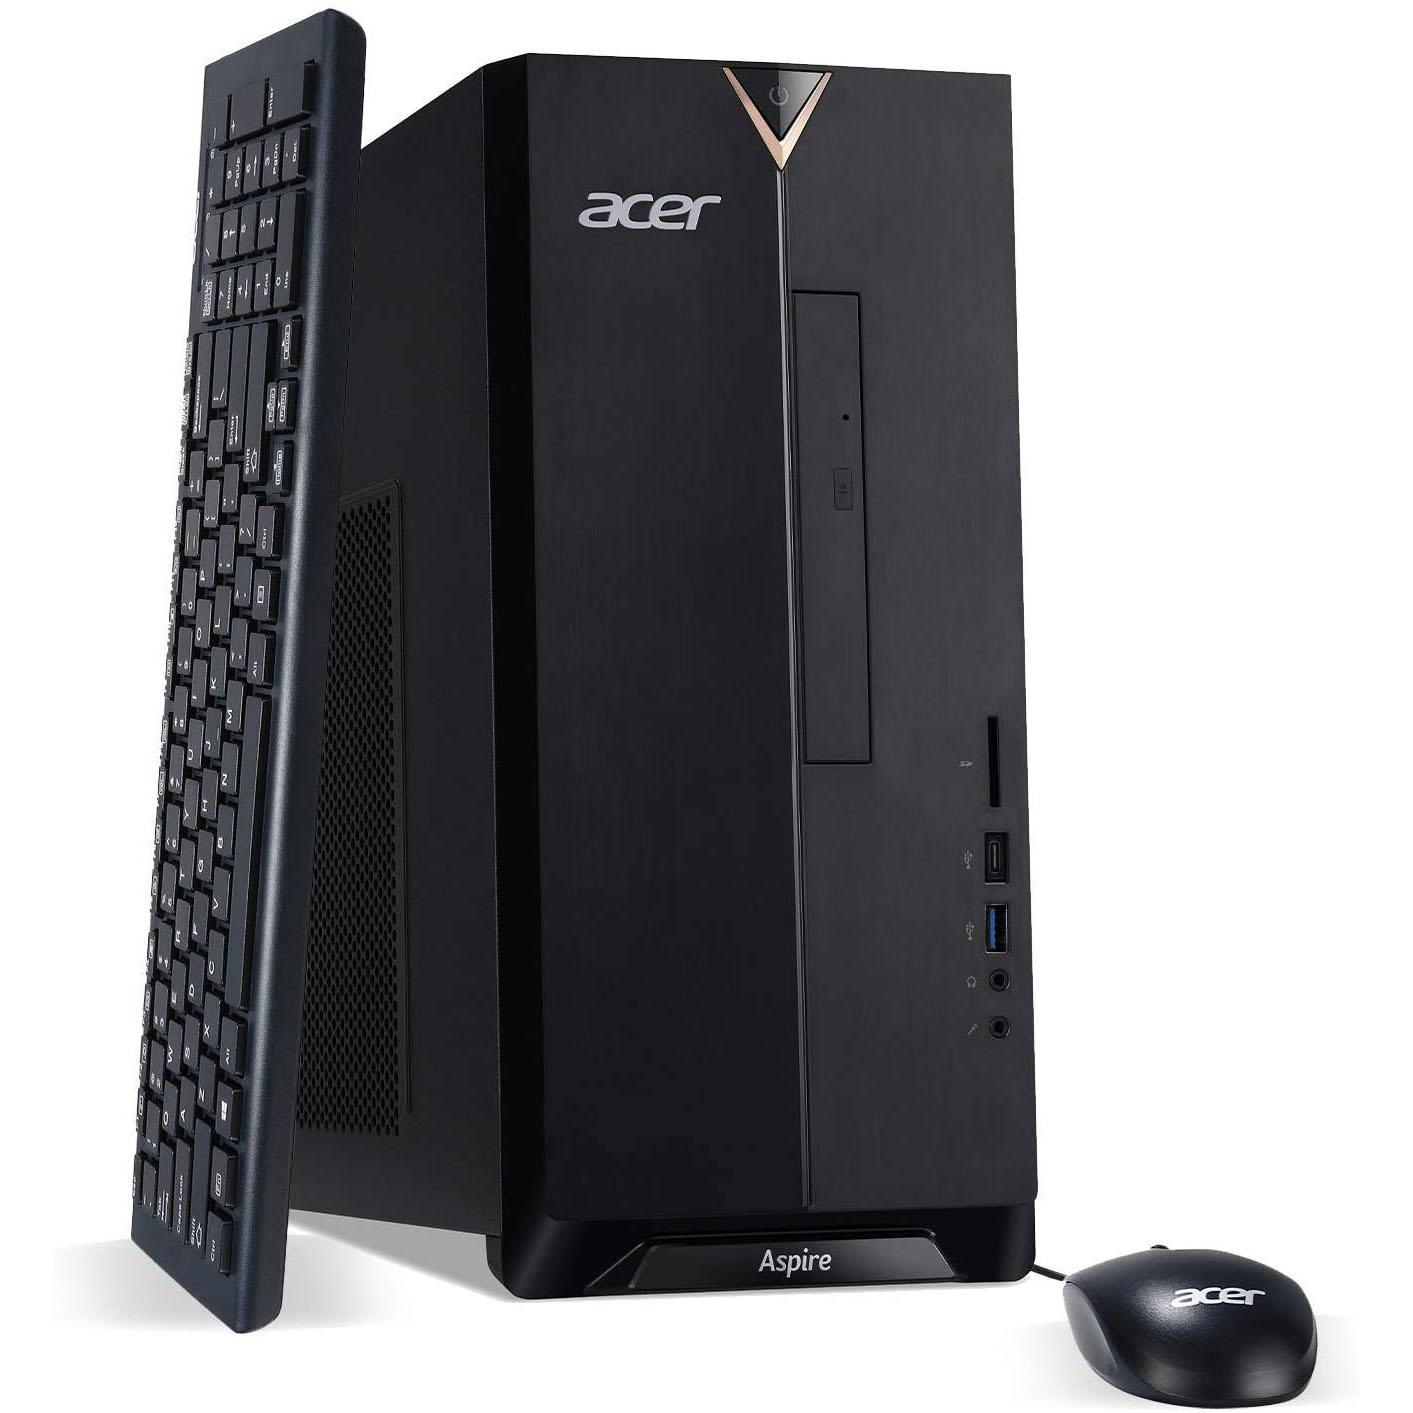 Acer Aspire TC-895-UA92 Desktop Computer for $514.95 Shipped